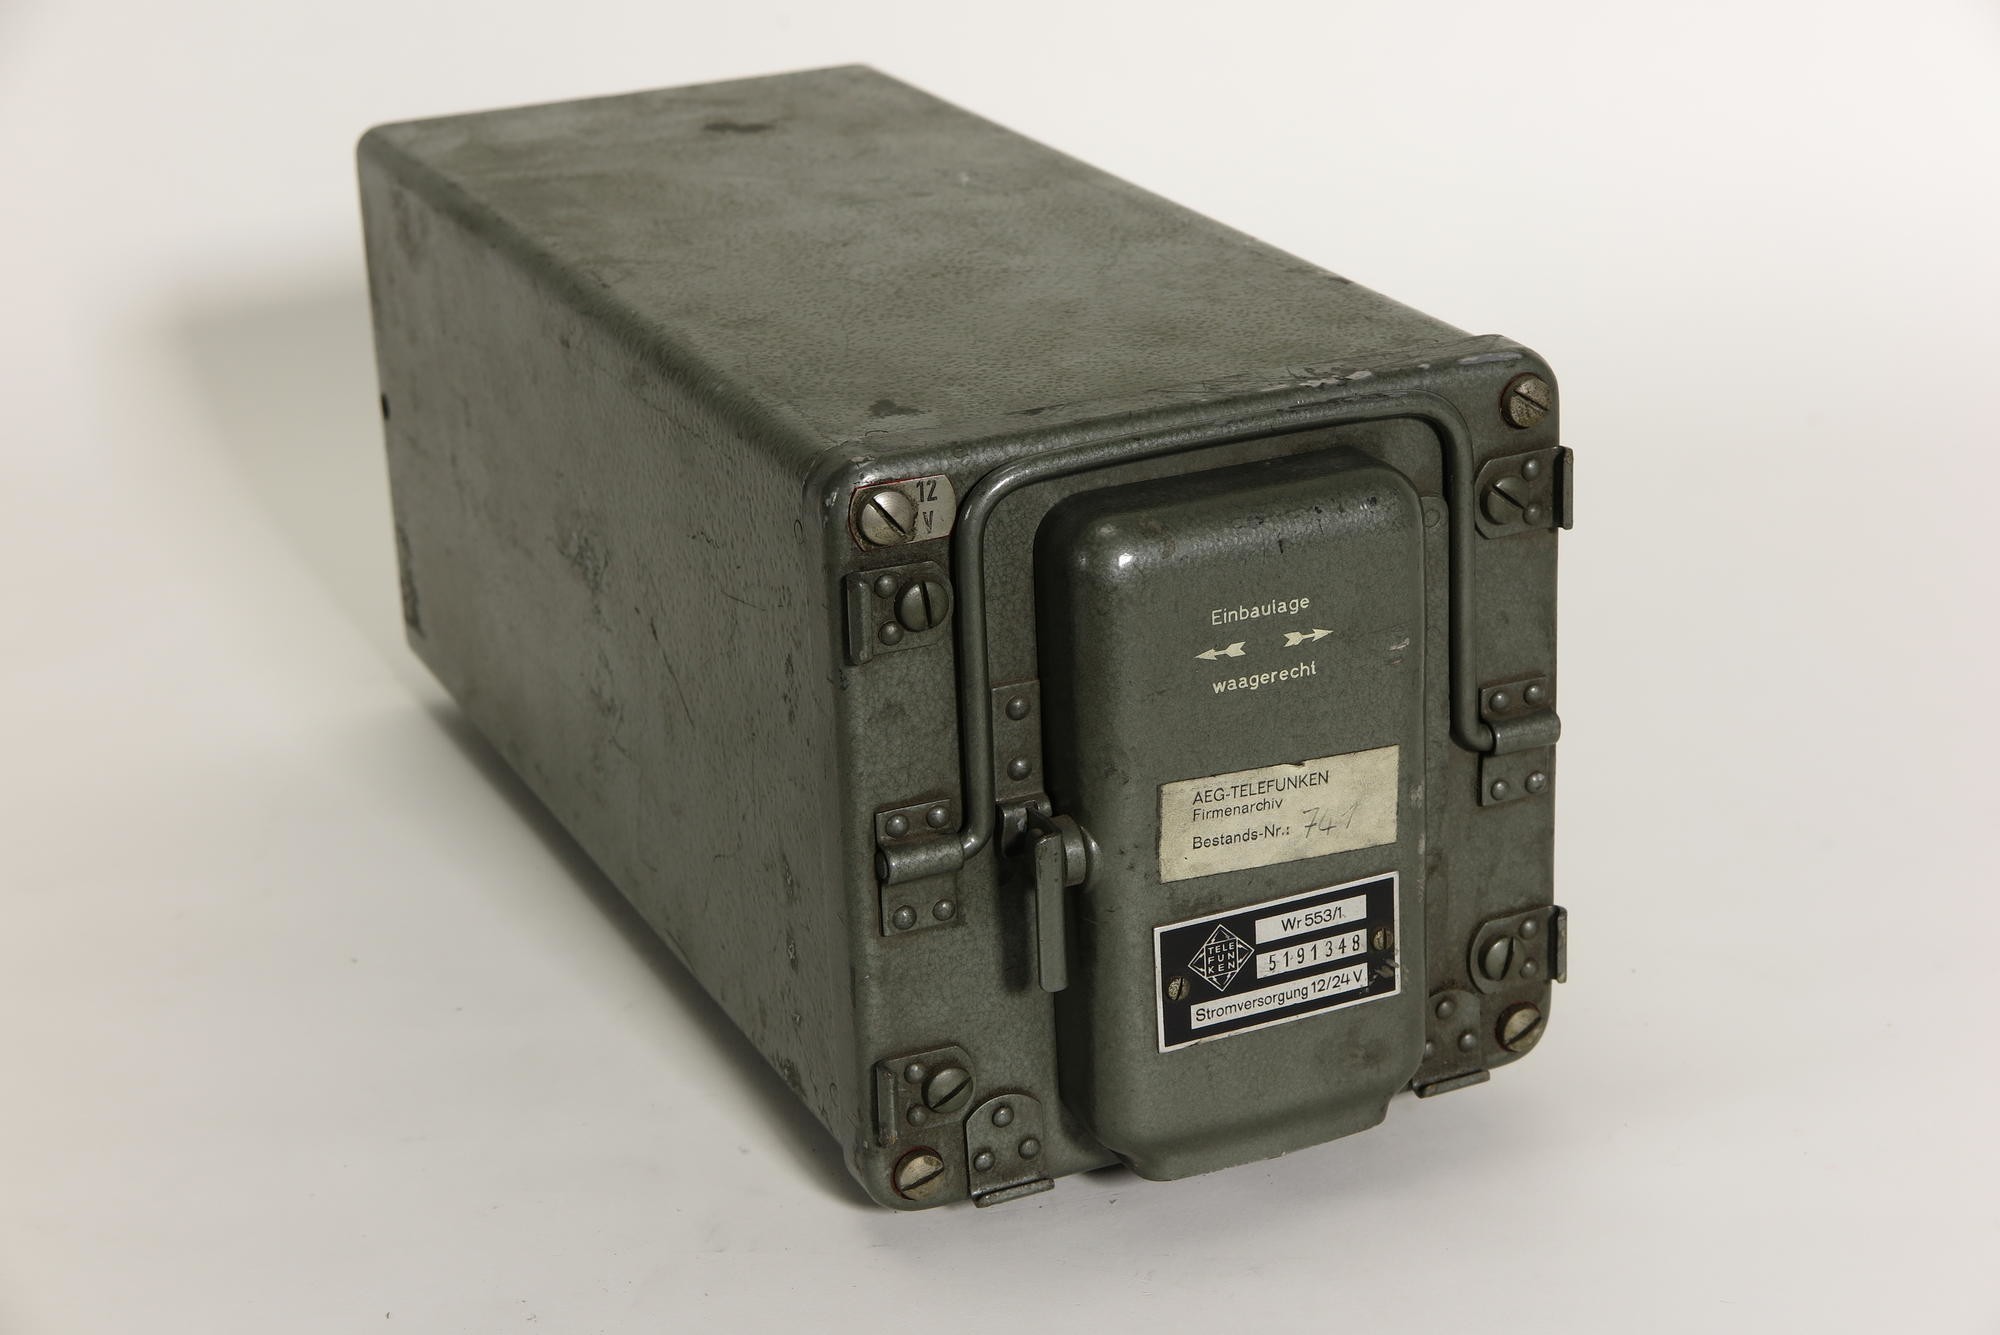 Batteriestromversorgung (Wechselrichter) Telefunken Wr 553/1 zu Funkanlage 80/160 Dora 2-S (Stiftung Deutsches Technikmuseum Berlin CC0)